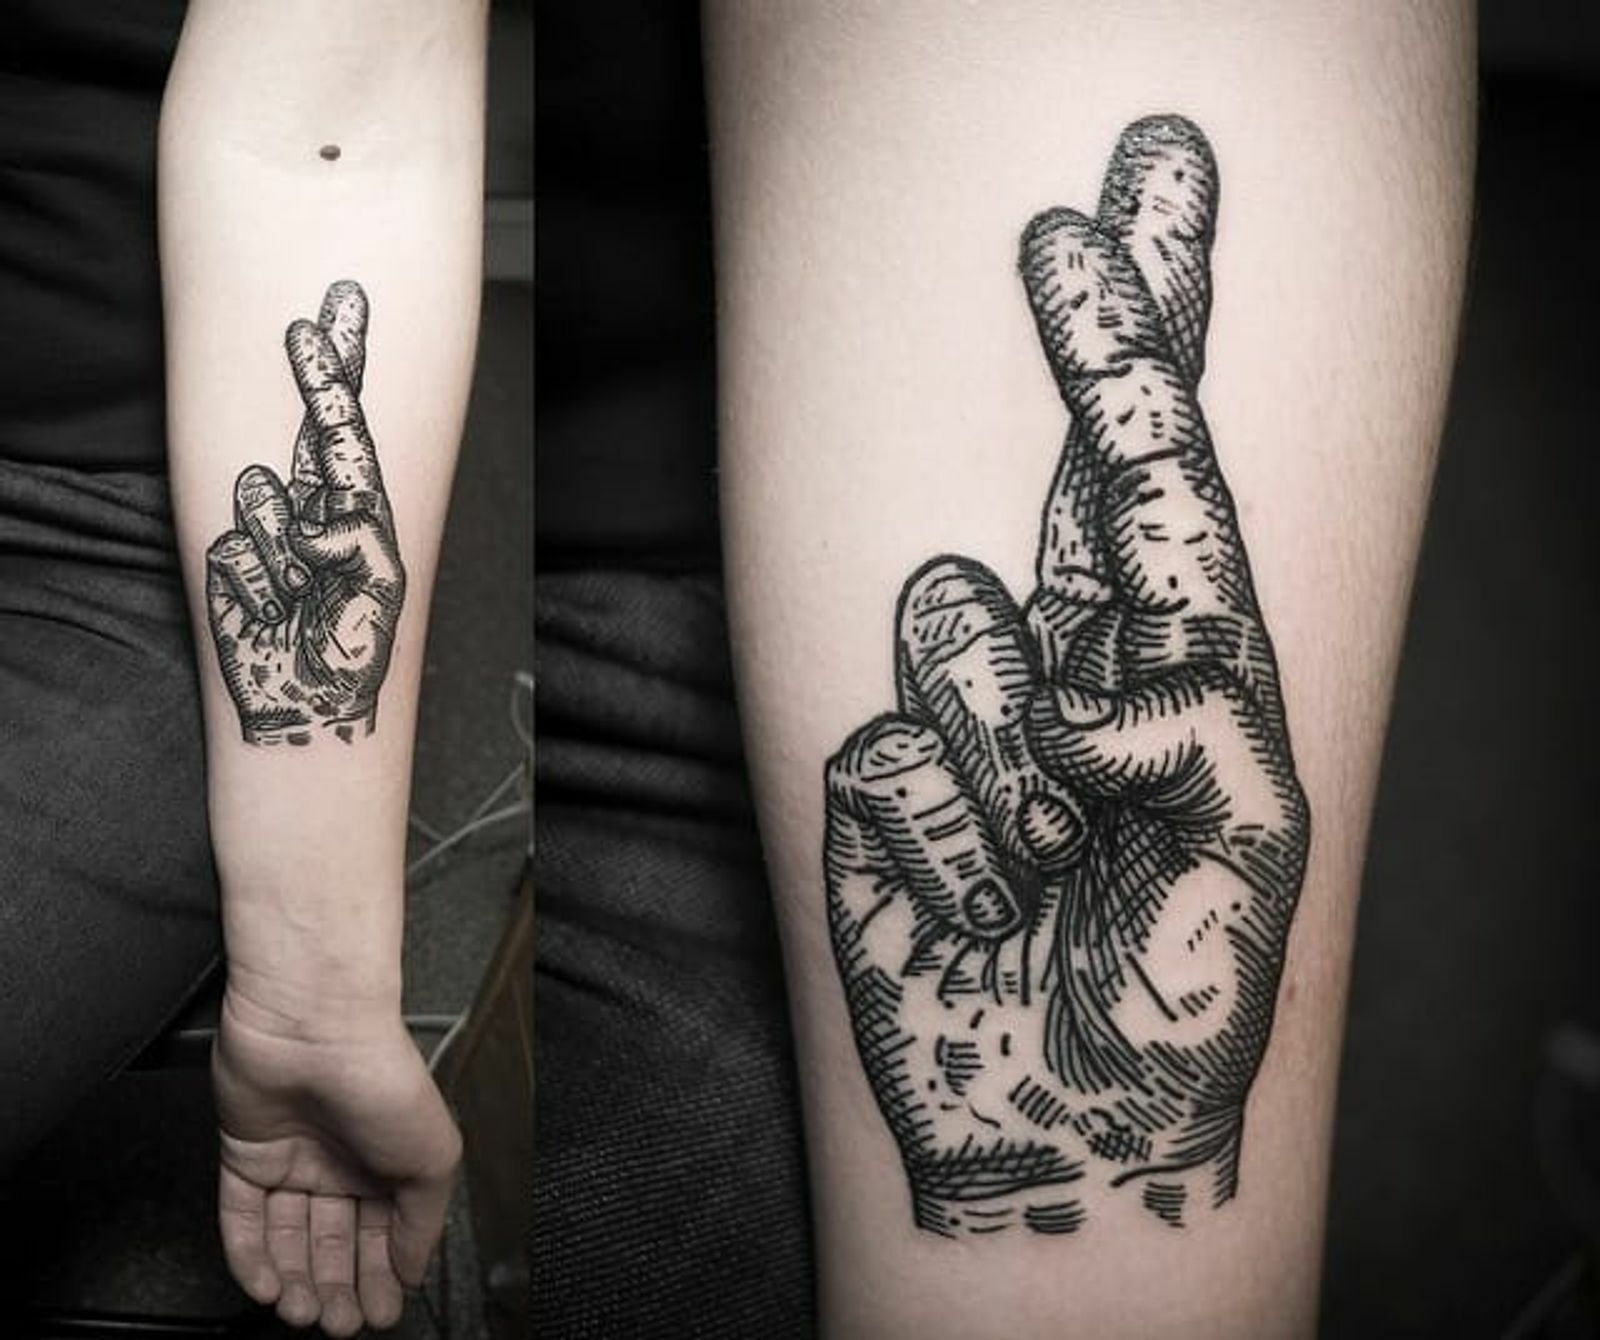 Татуировка скрещенных пальцев: носитель символики и скрытых значений